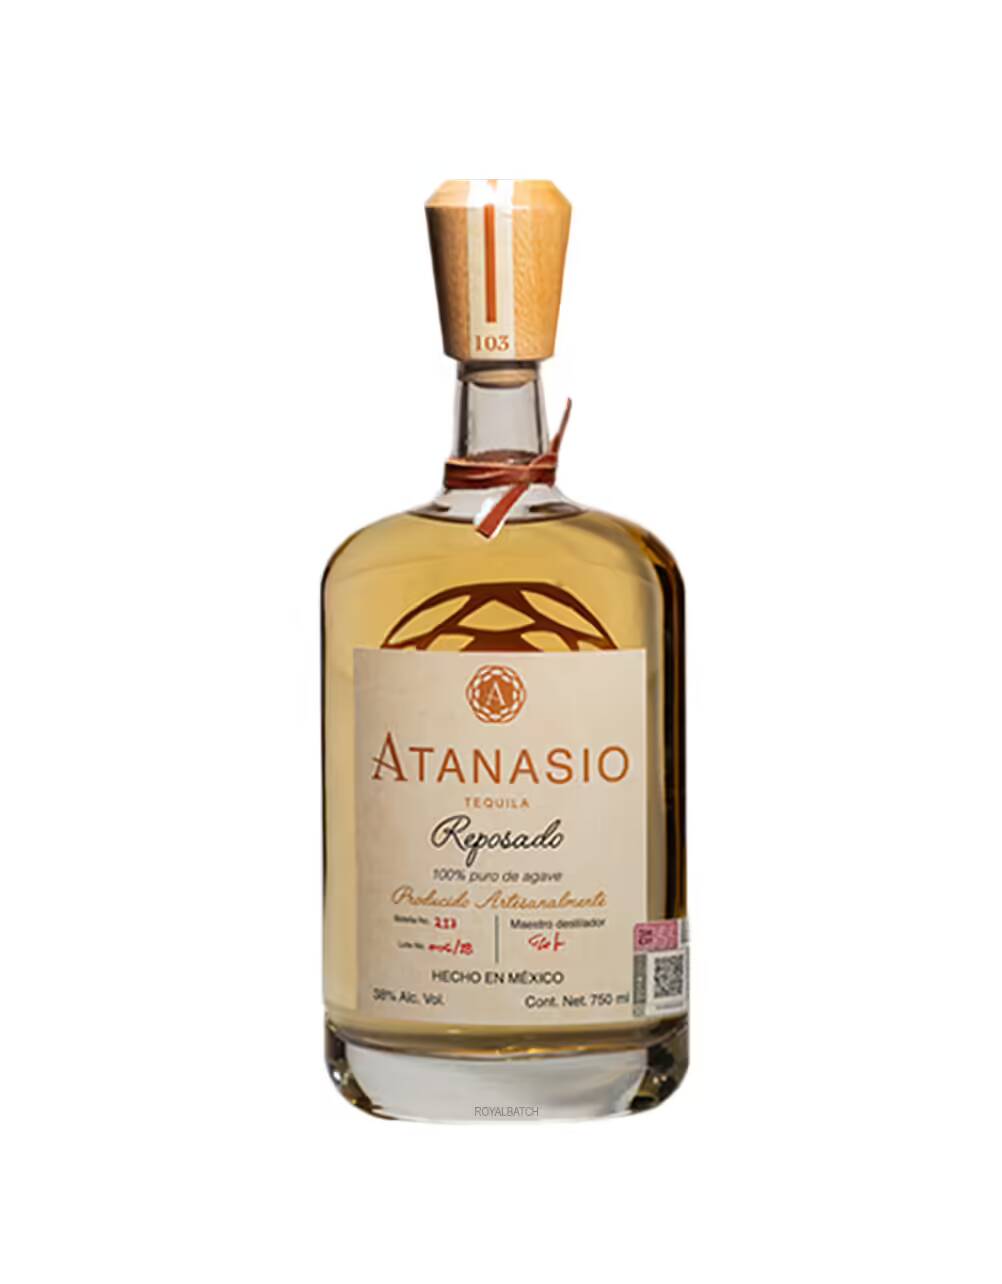 Atanasio Reposado Tequila